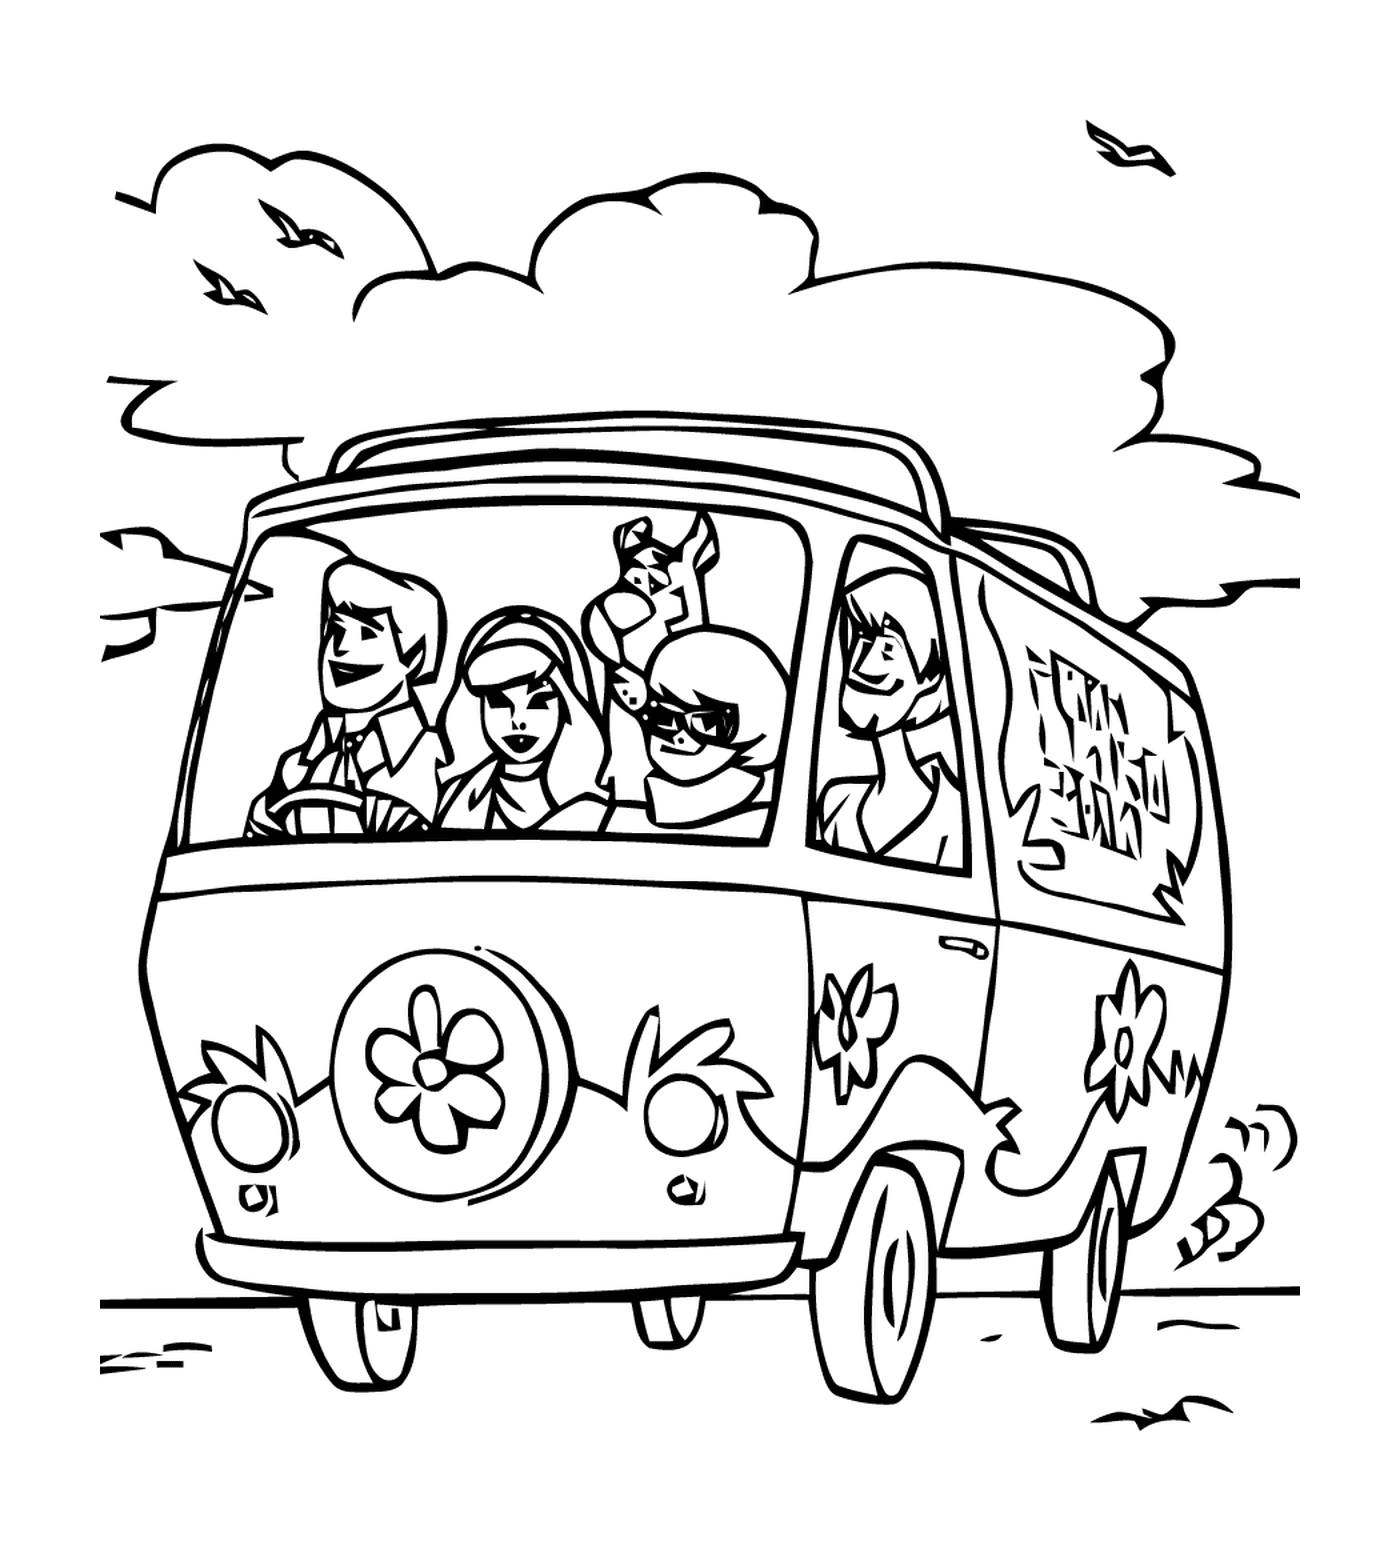  Un gruppo di persone in una macchina sulla strada 